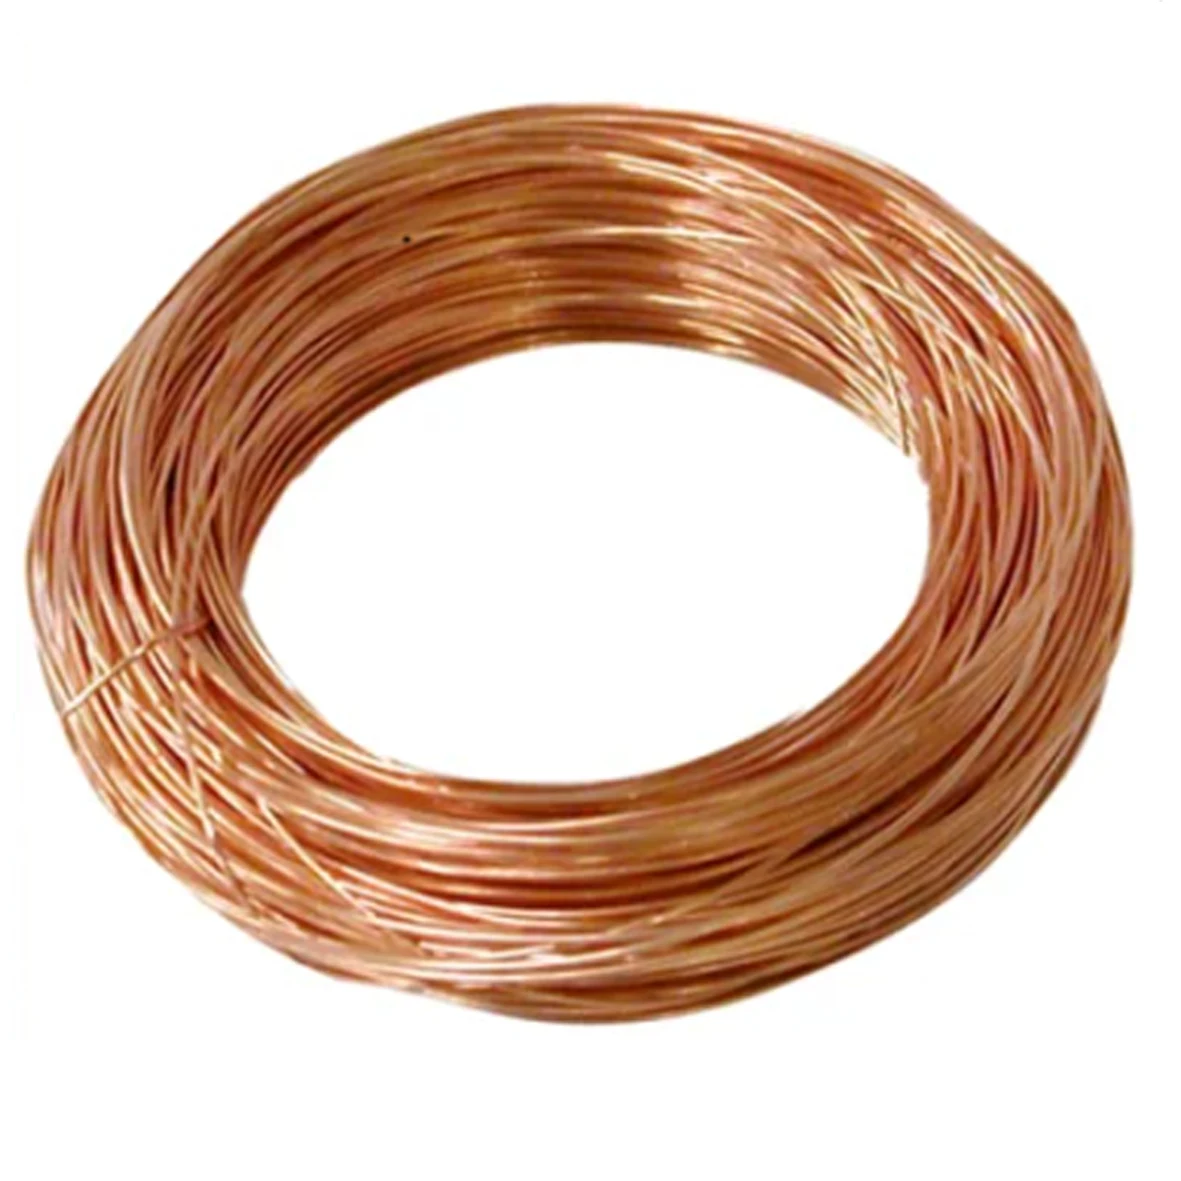 Кусочки медной проволоки. Copper wire 99.99%. Bare Copper wire, 20 SWG. Ту 16 705 492 2005 проволока медная круглая электротехническая. Проволока 20 м.